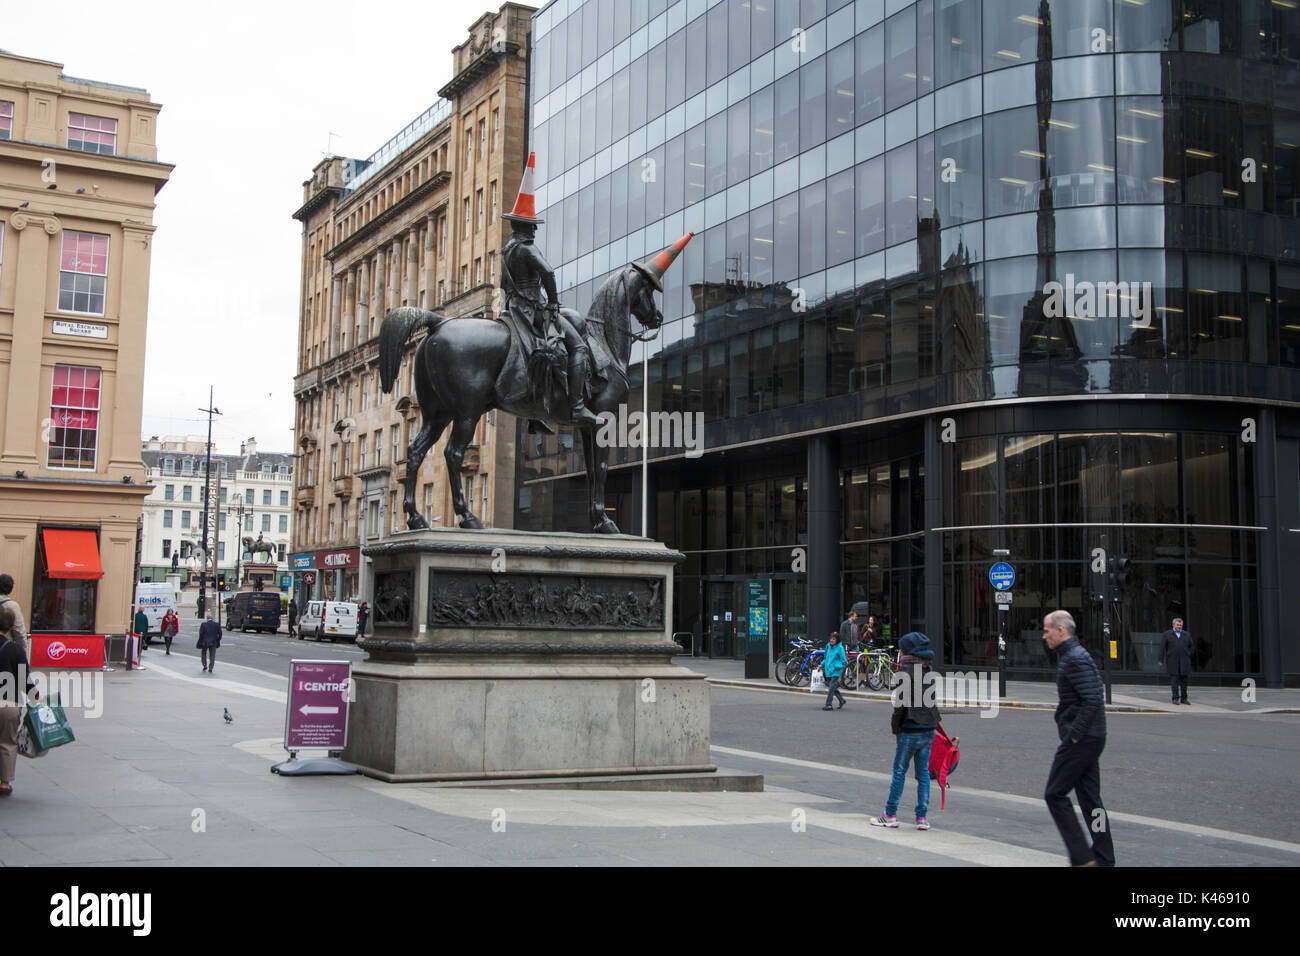 Statua equina del duca di Wellington con un cono stradale sulla sua testa al di fuori della galleria di arte moderna o goma glasgow Scozia Scotland Foto Stock